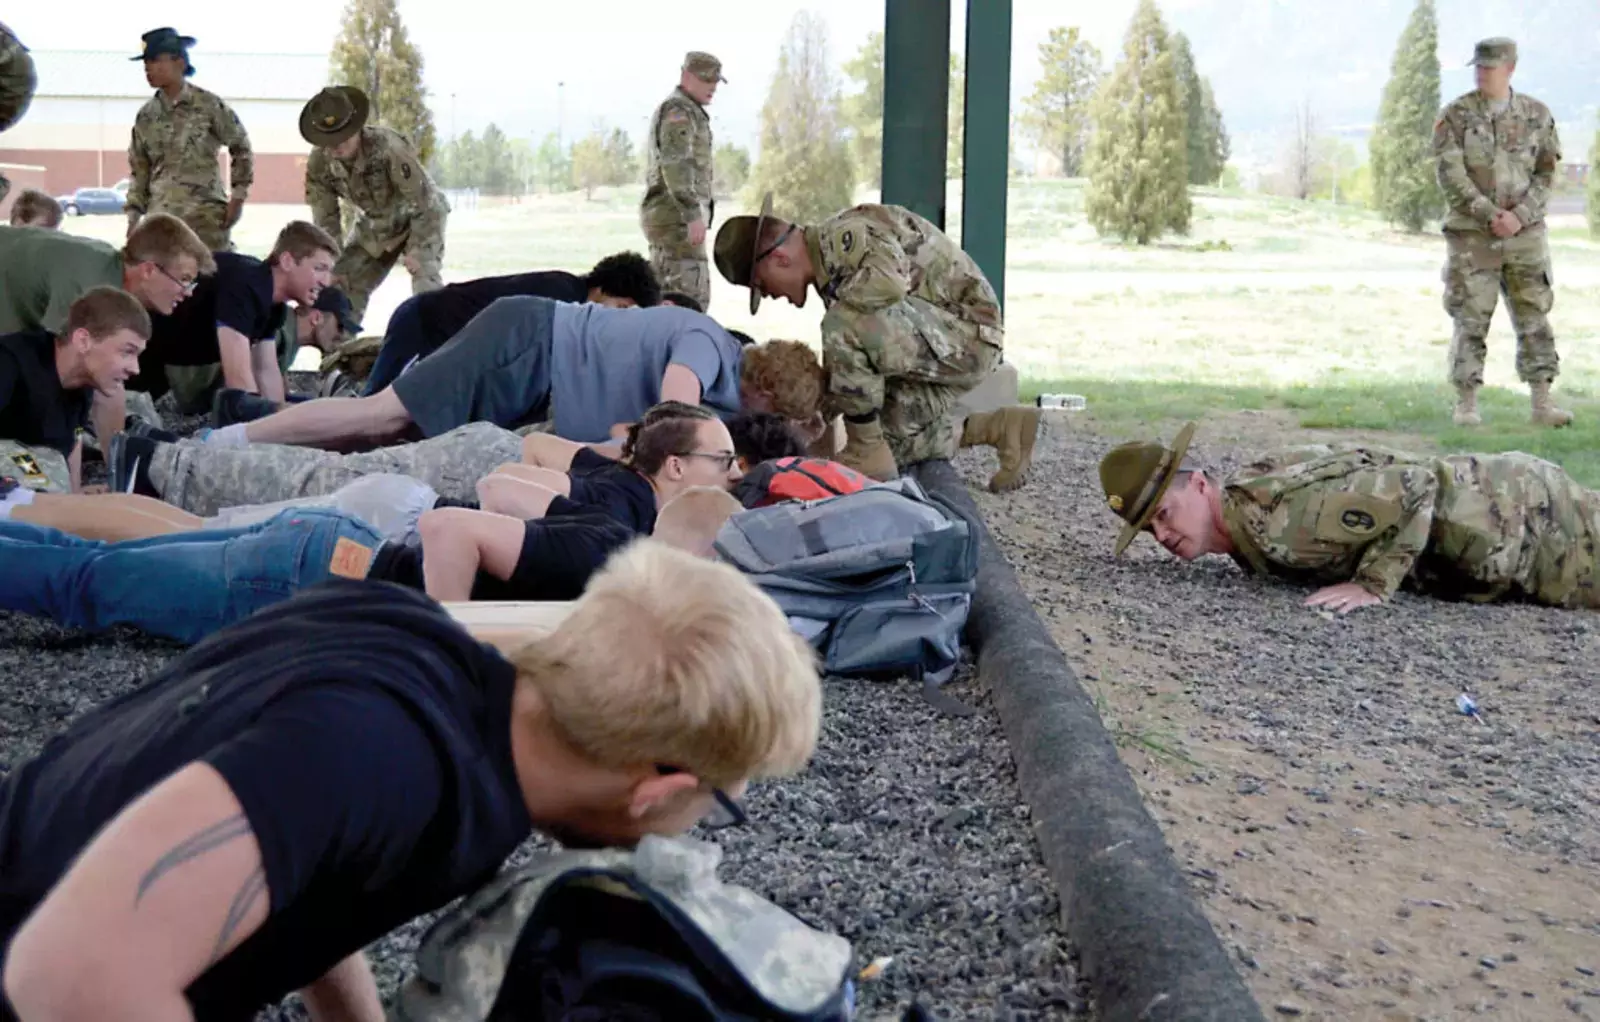 Сержанты резерва армии 415-го пехотного полка инструктируют будущих солдат о надлежащей технике отжимания во время мероприятия Future Soldier на Першинг-Филд 12 мая 2018 года в Форт-Карсон, штат Колорадо